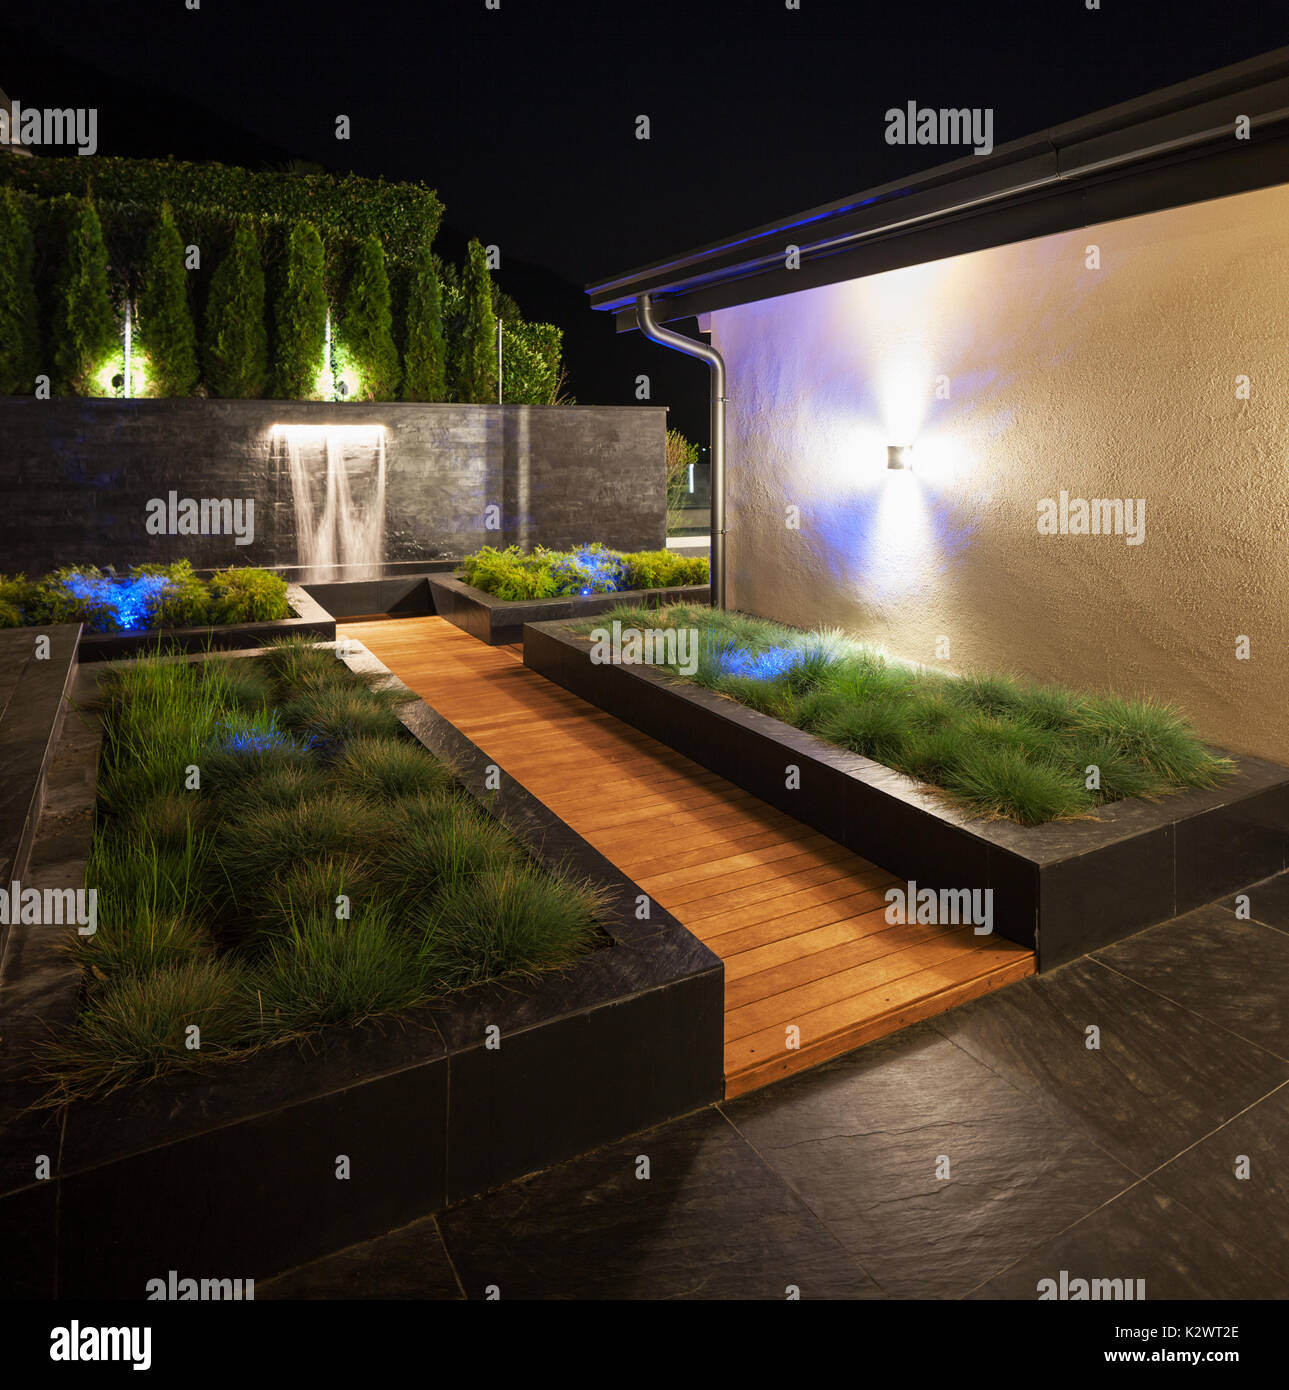 Garden in the yard of luxury villa Stock Photo